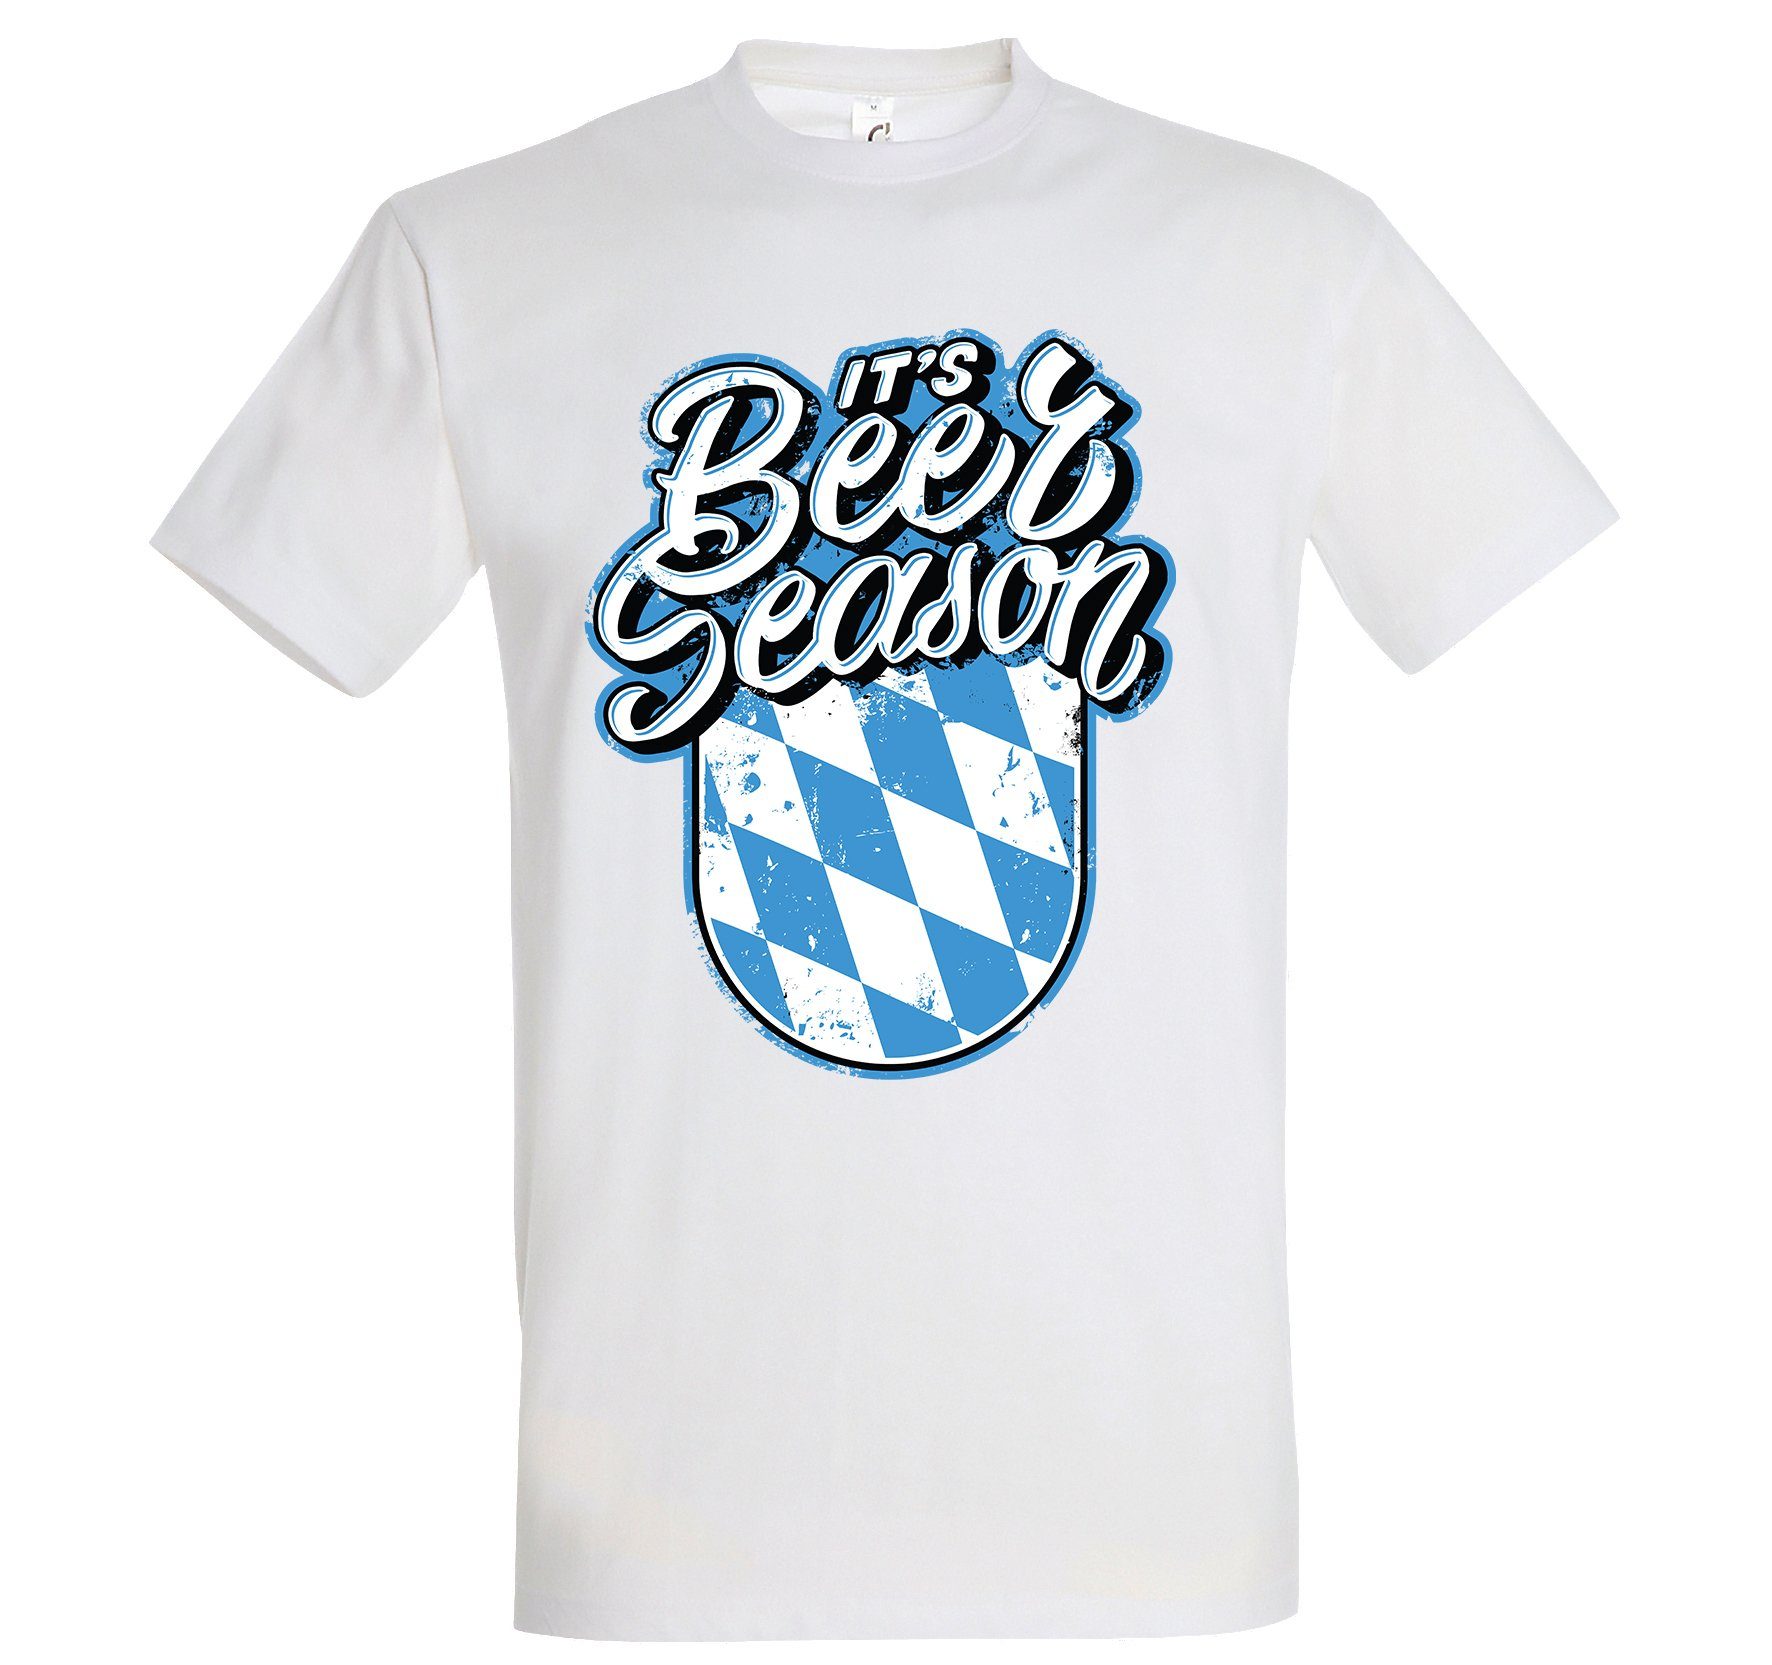 Shirt Youth mit Bayern Season Designz trendigem Weiß T-Shirt Beer Frontprint Herren